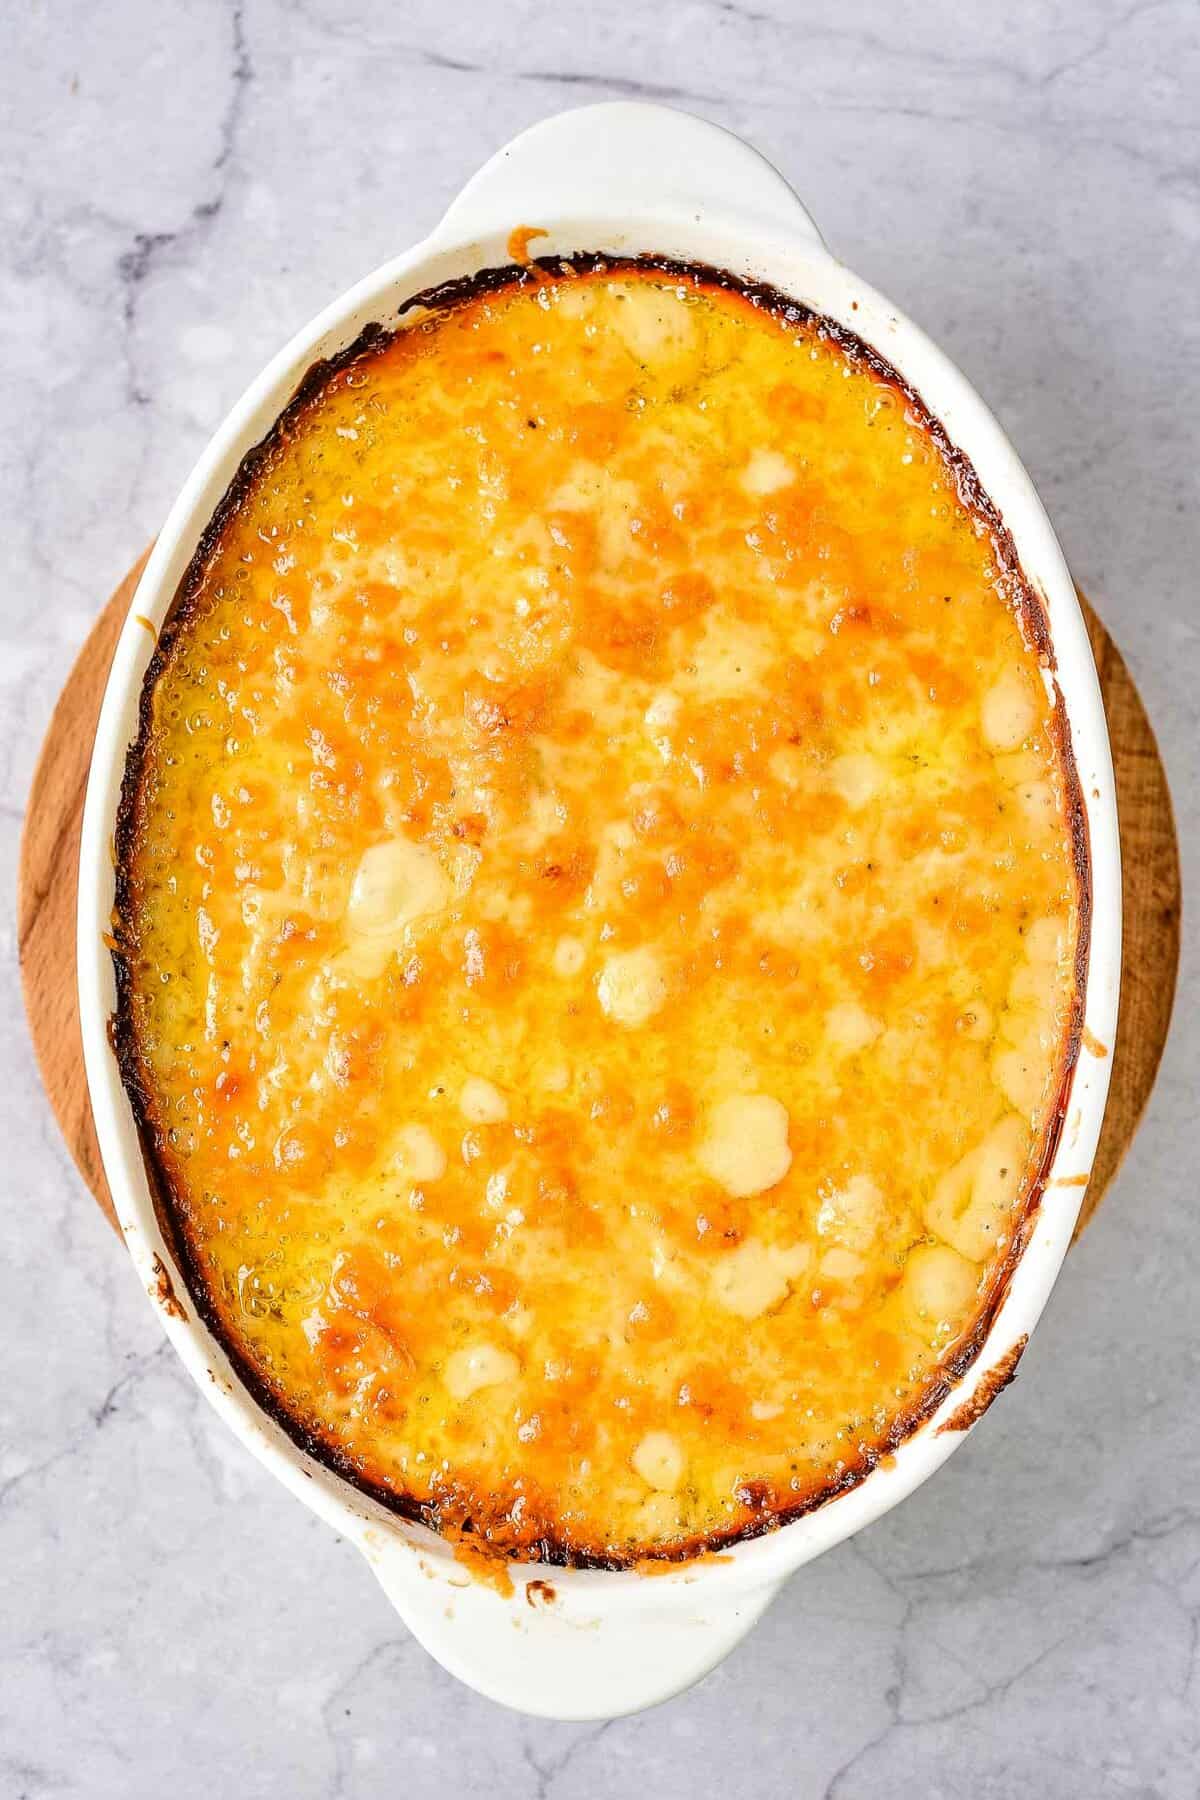 Cheesy potato casserole in a white dish.